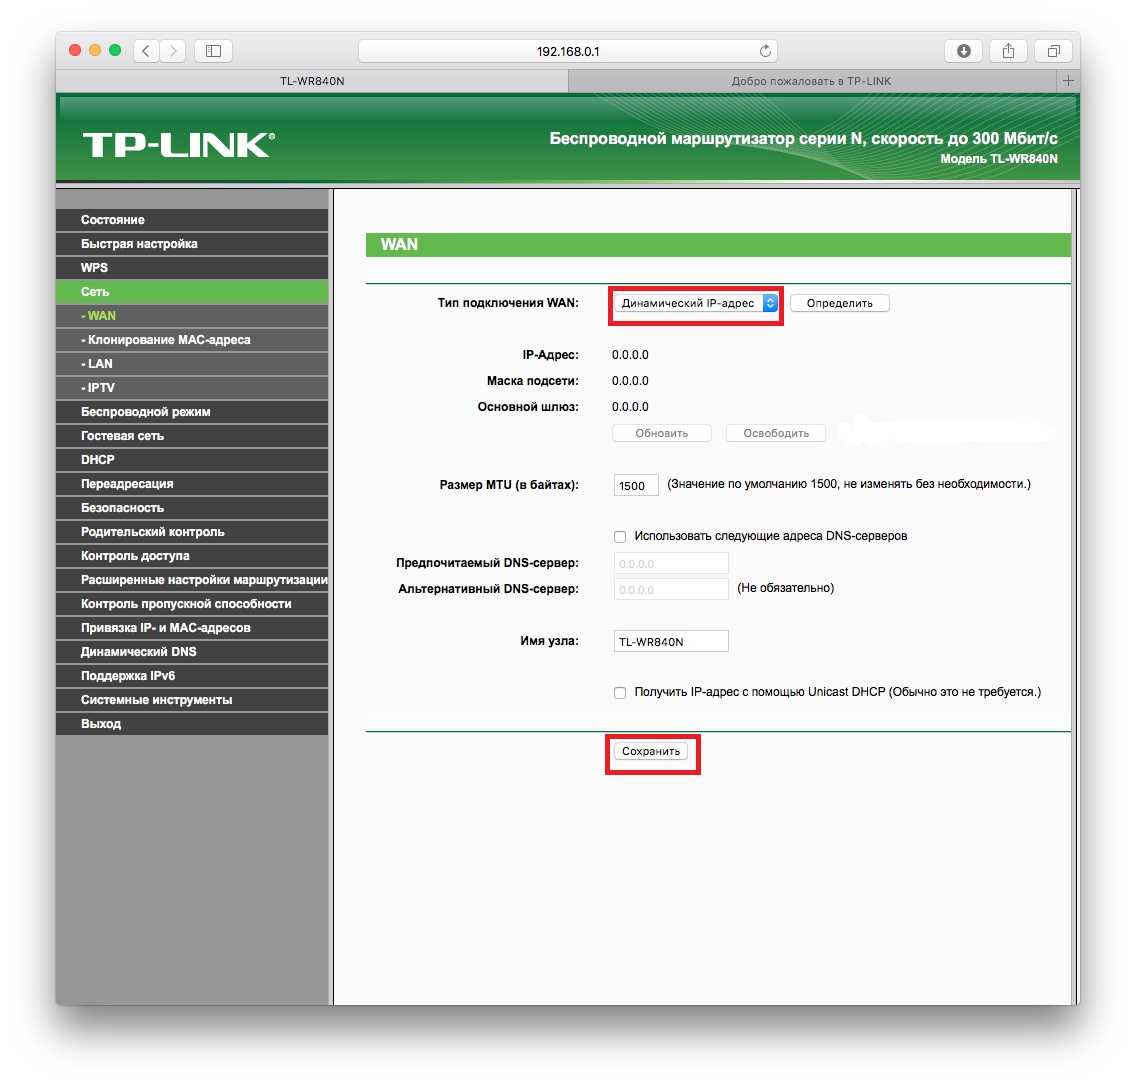 Обзор роутера tp-link tl-wr840n - как настроить wifi и подключить интернет?